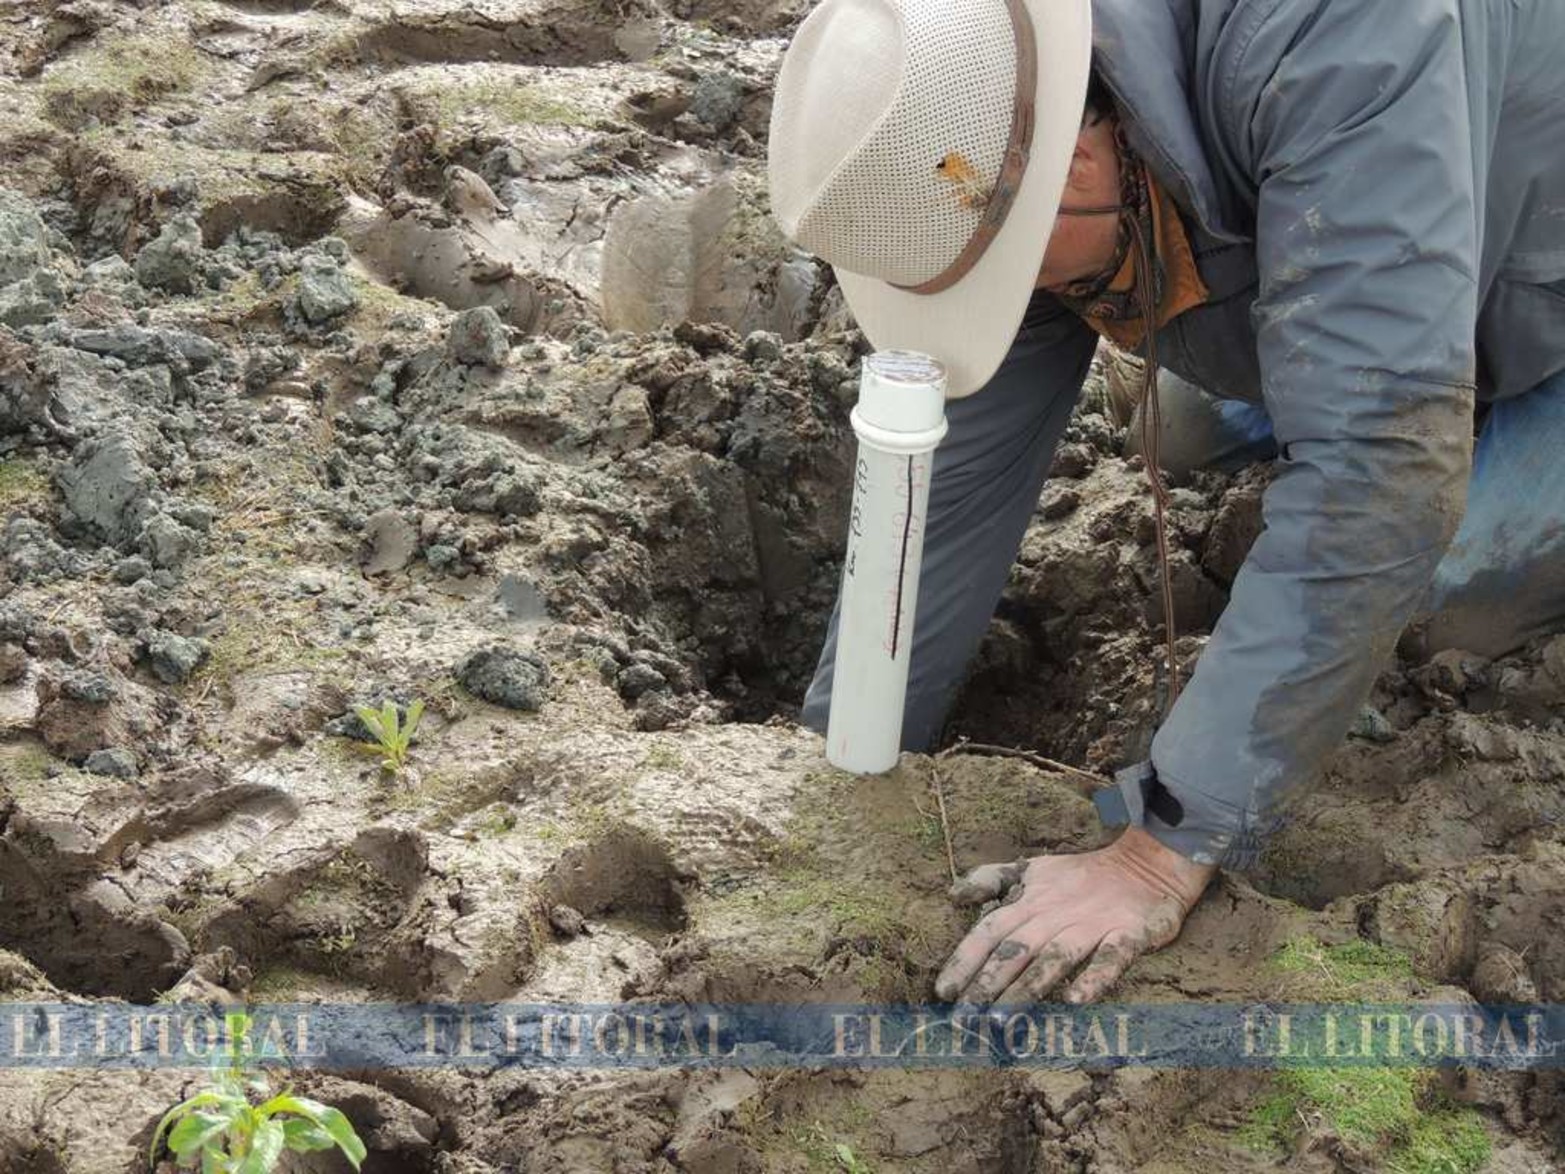 Perforan el lecho de la Setúbal en busca de restos paleontológicos. También quieren saber hace cuántos años se formó la laguna.